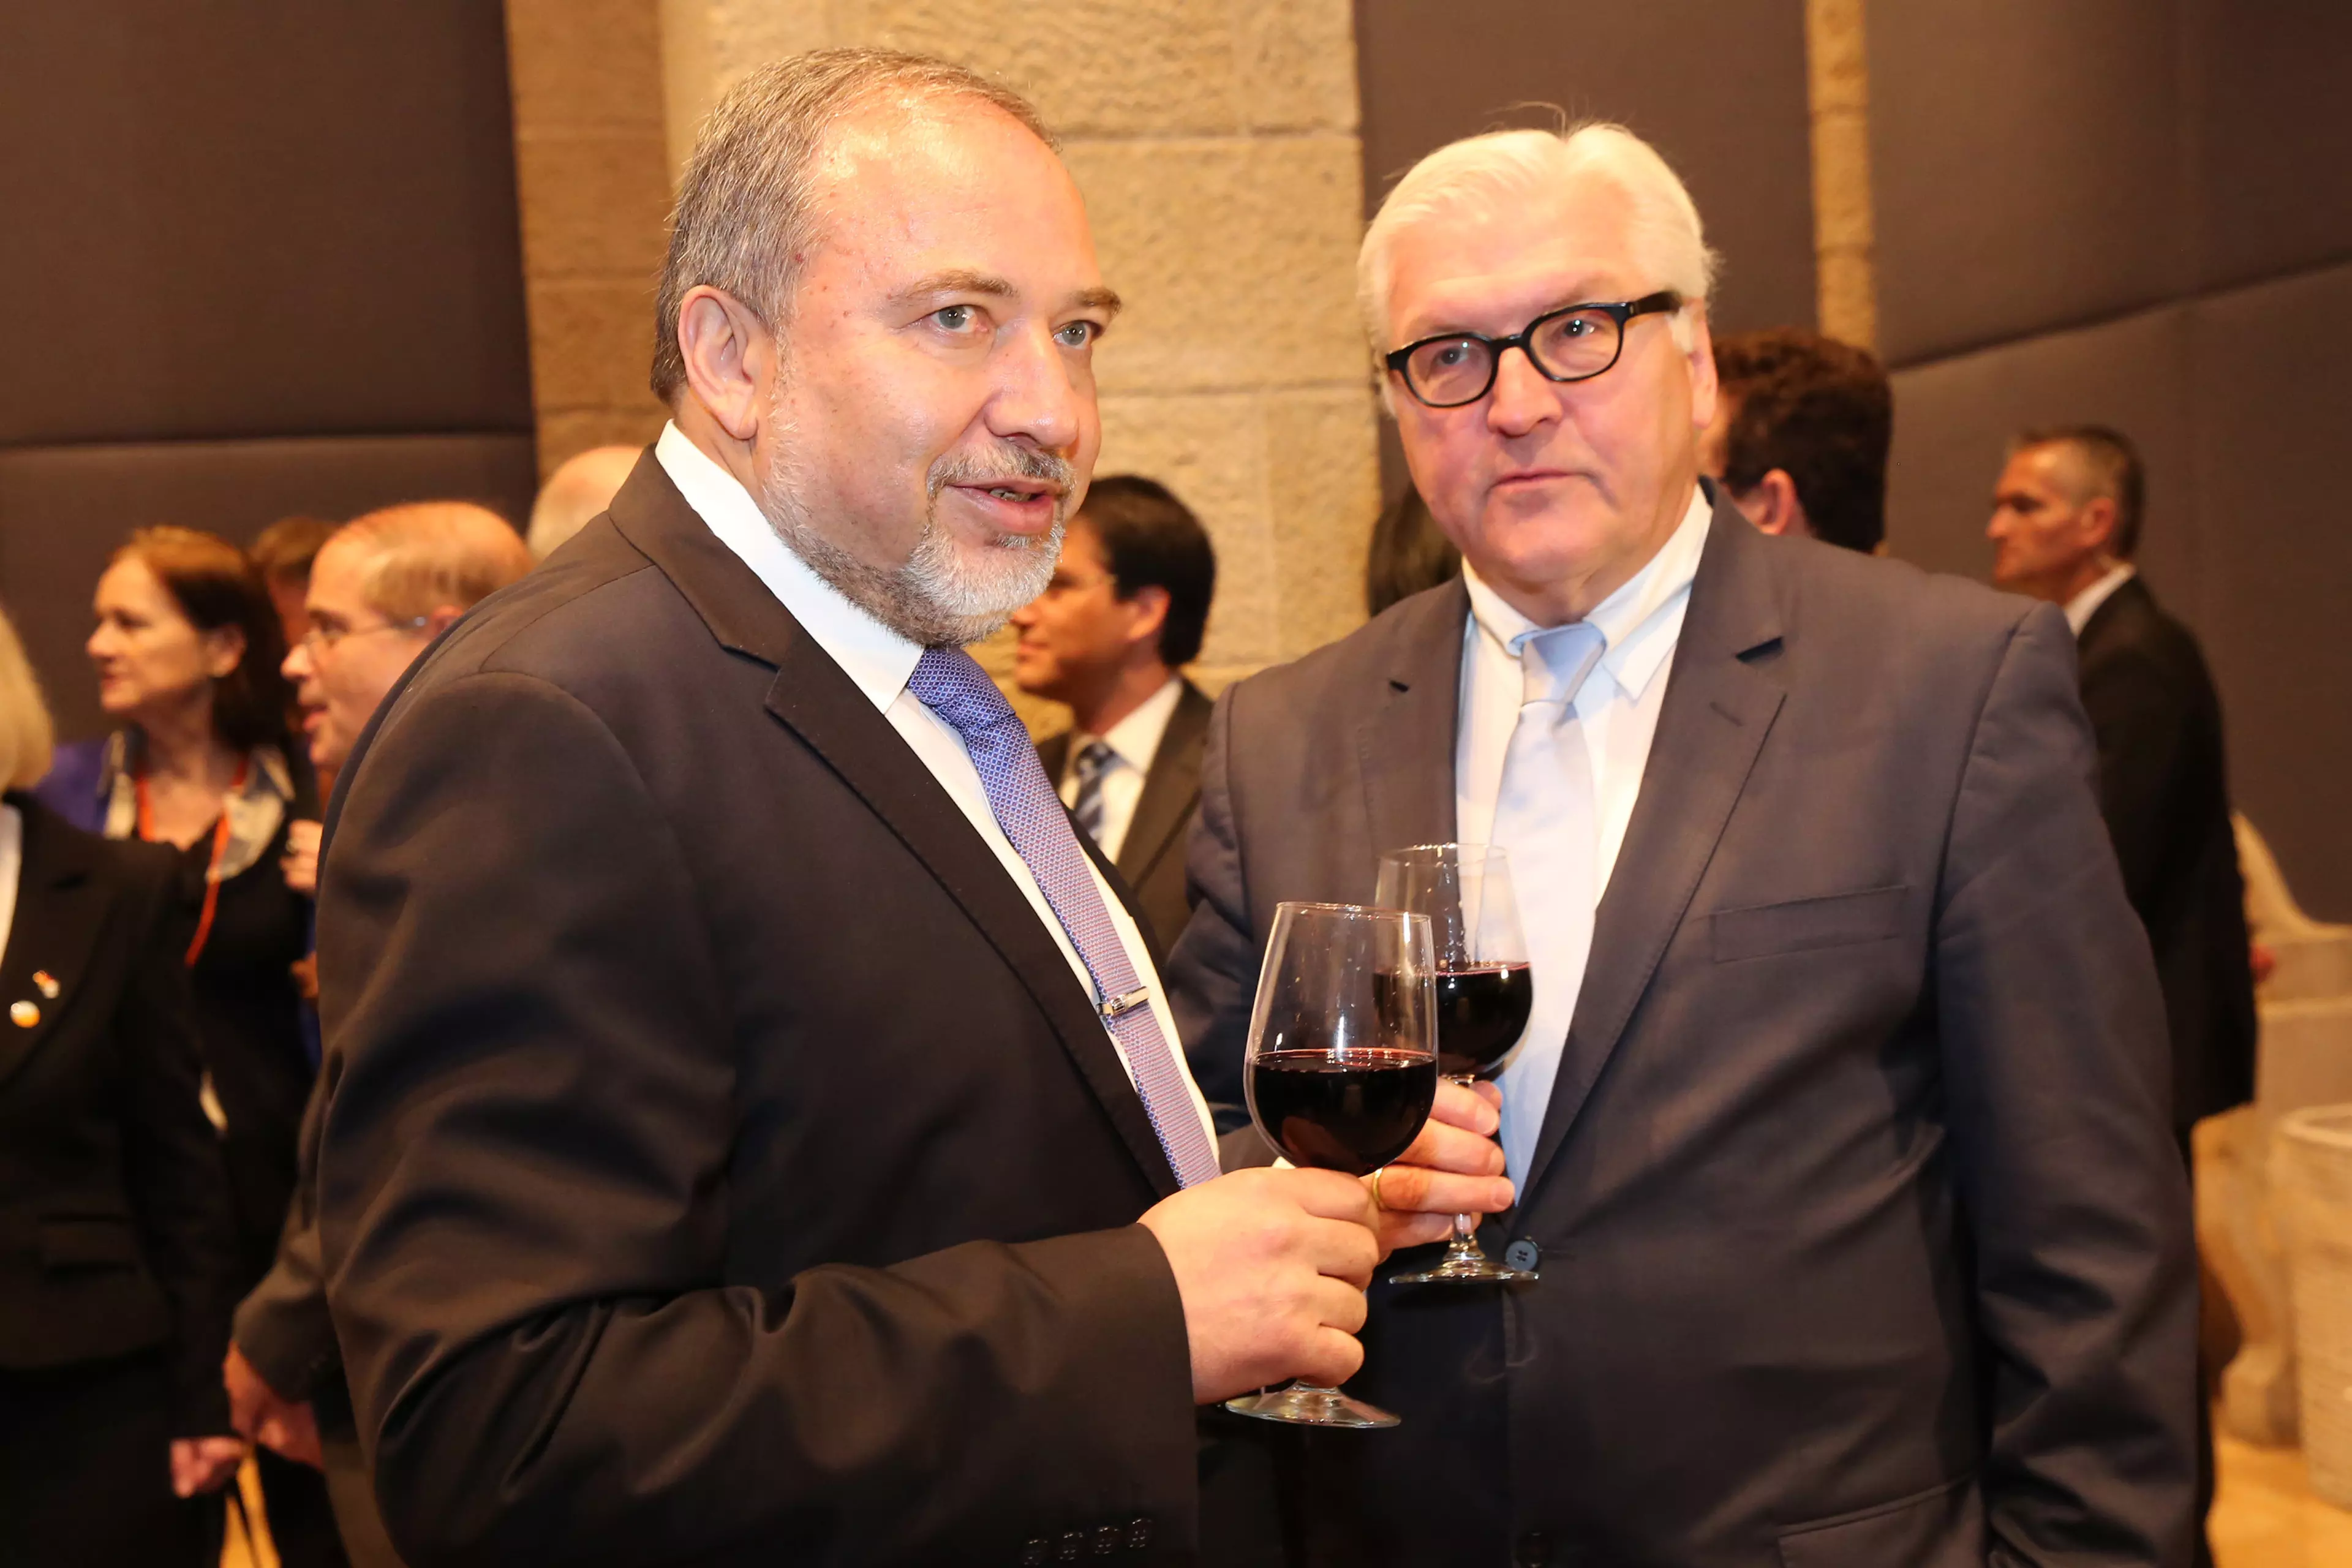 השתתף באירוע "בזמנו החופשי". ליברמן עם שר החוץ הגרמני וולטר שטיינמאייר בירושלים, לפני חודשיים